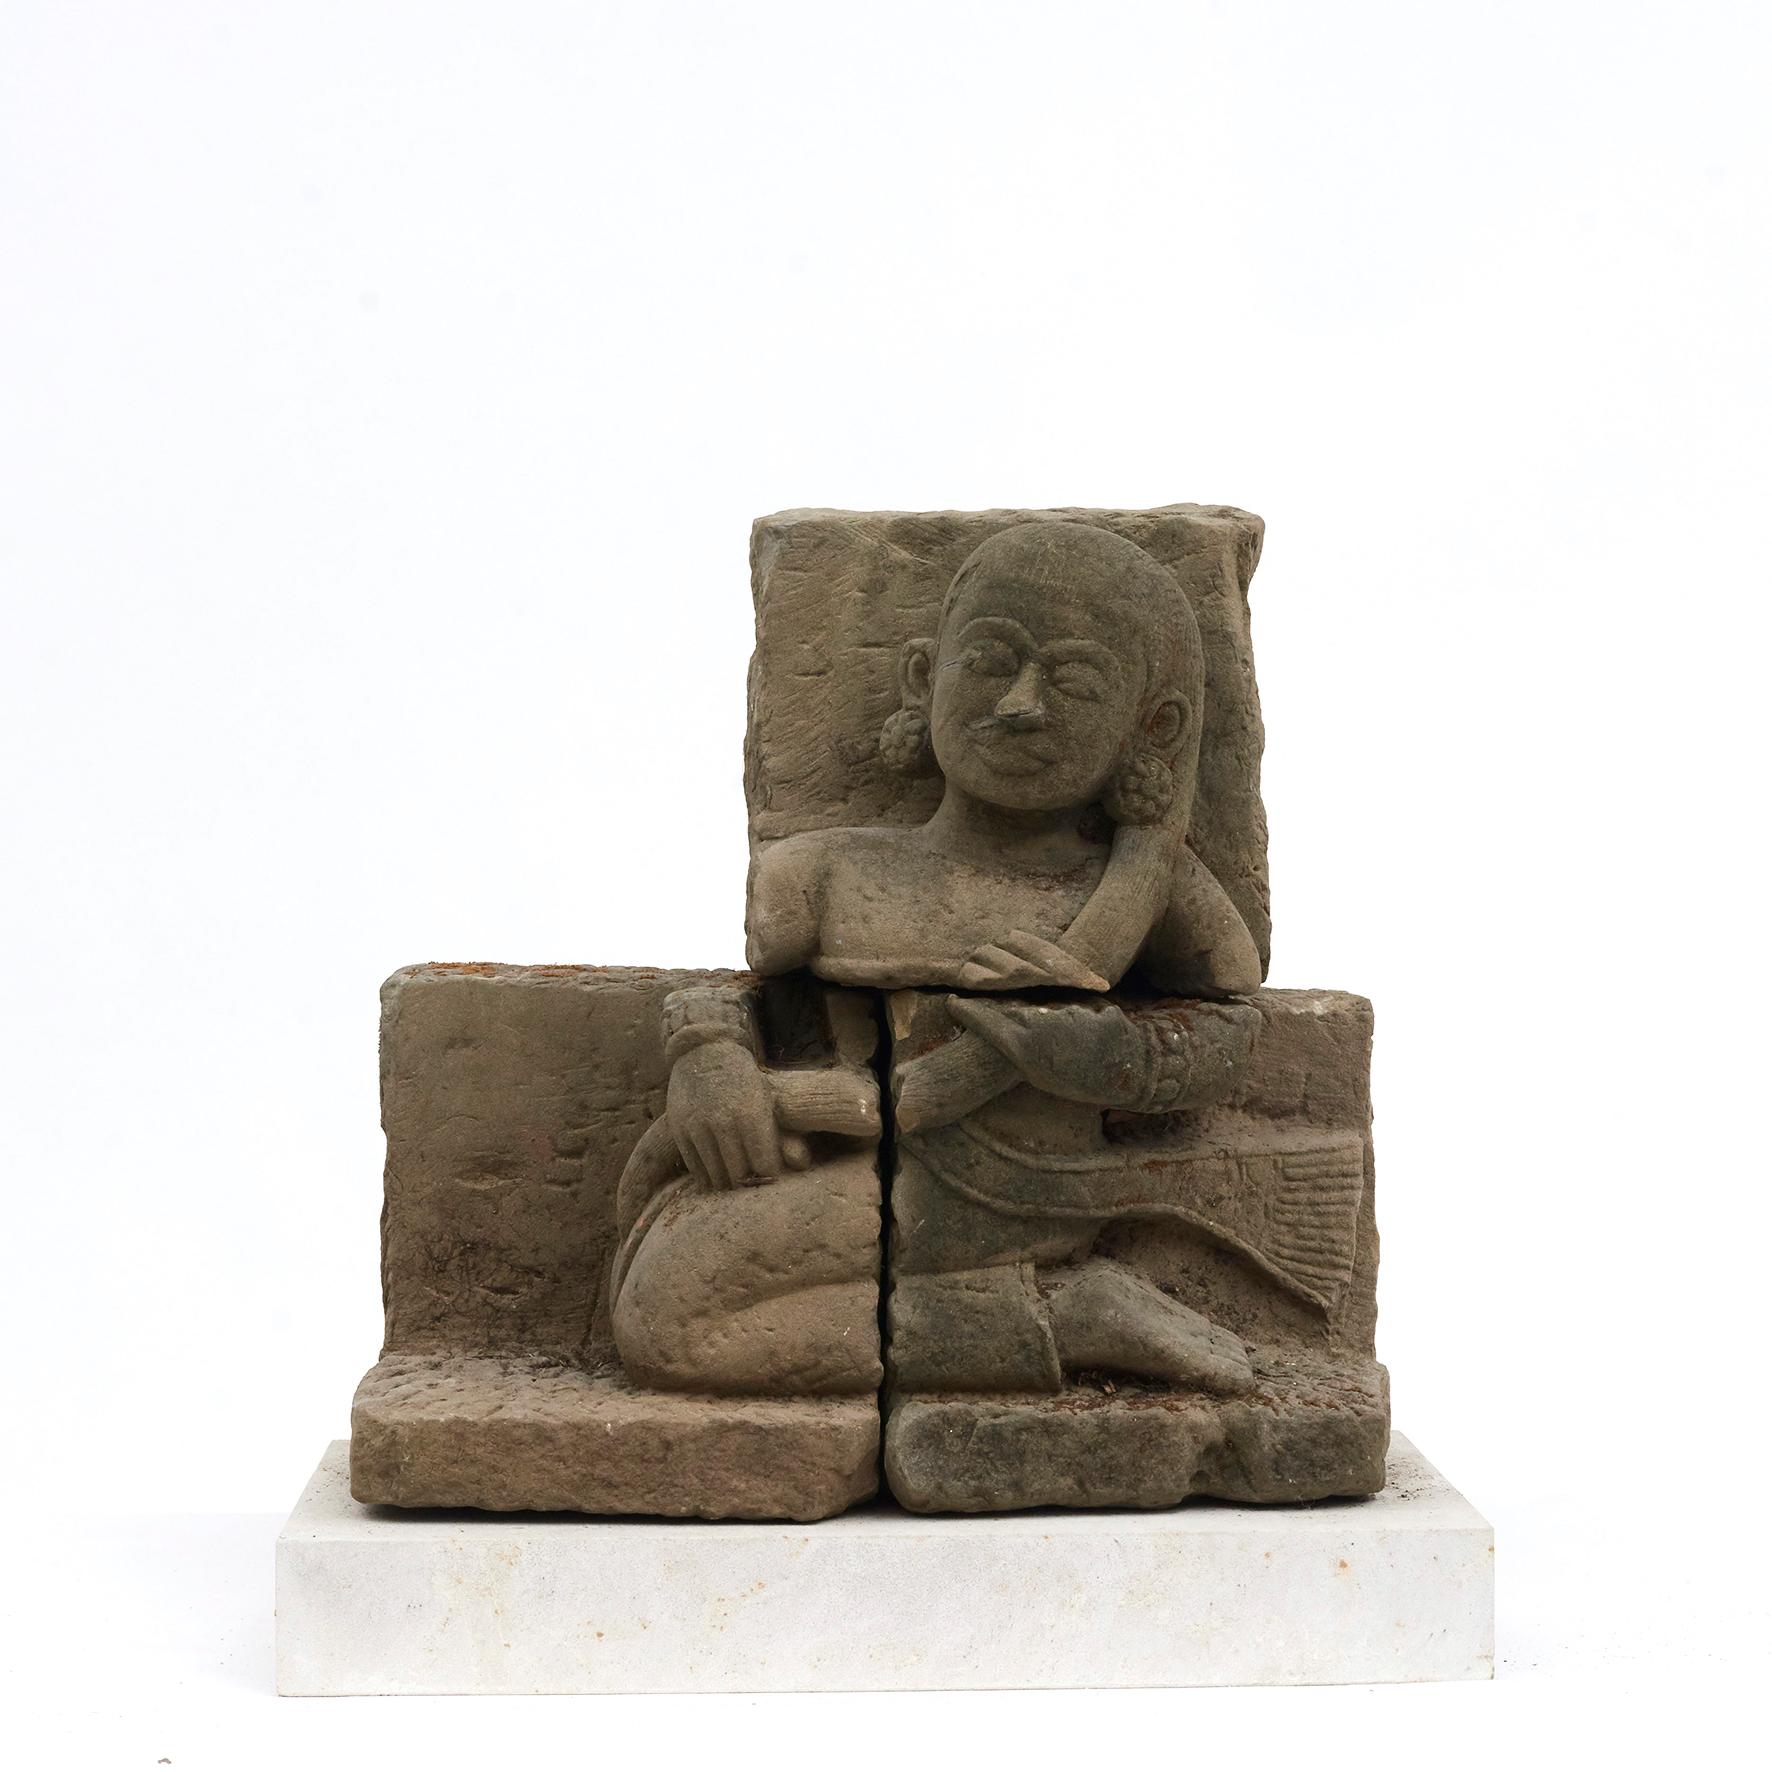 Ein Paar geschnitzte Tempelwächter aus Sandstein.
Stammt aus Paragoda in Burma um das 15. Jahrhundert.
Handgeschnitzt mit feinen Details. Jeder Schutz besteht aus zwei Teilen, die mit Schrauben zusammengefügt sind, die bis zu 1 Tonne heben